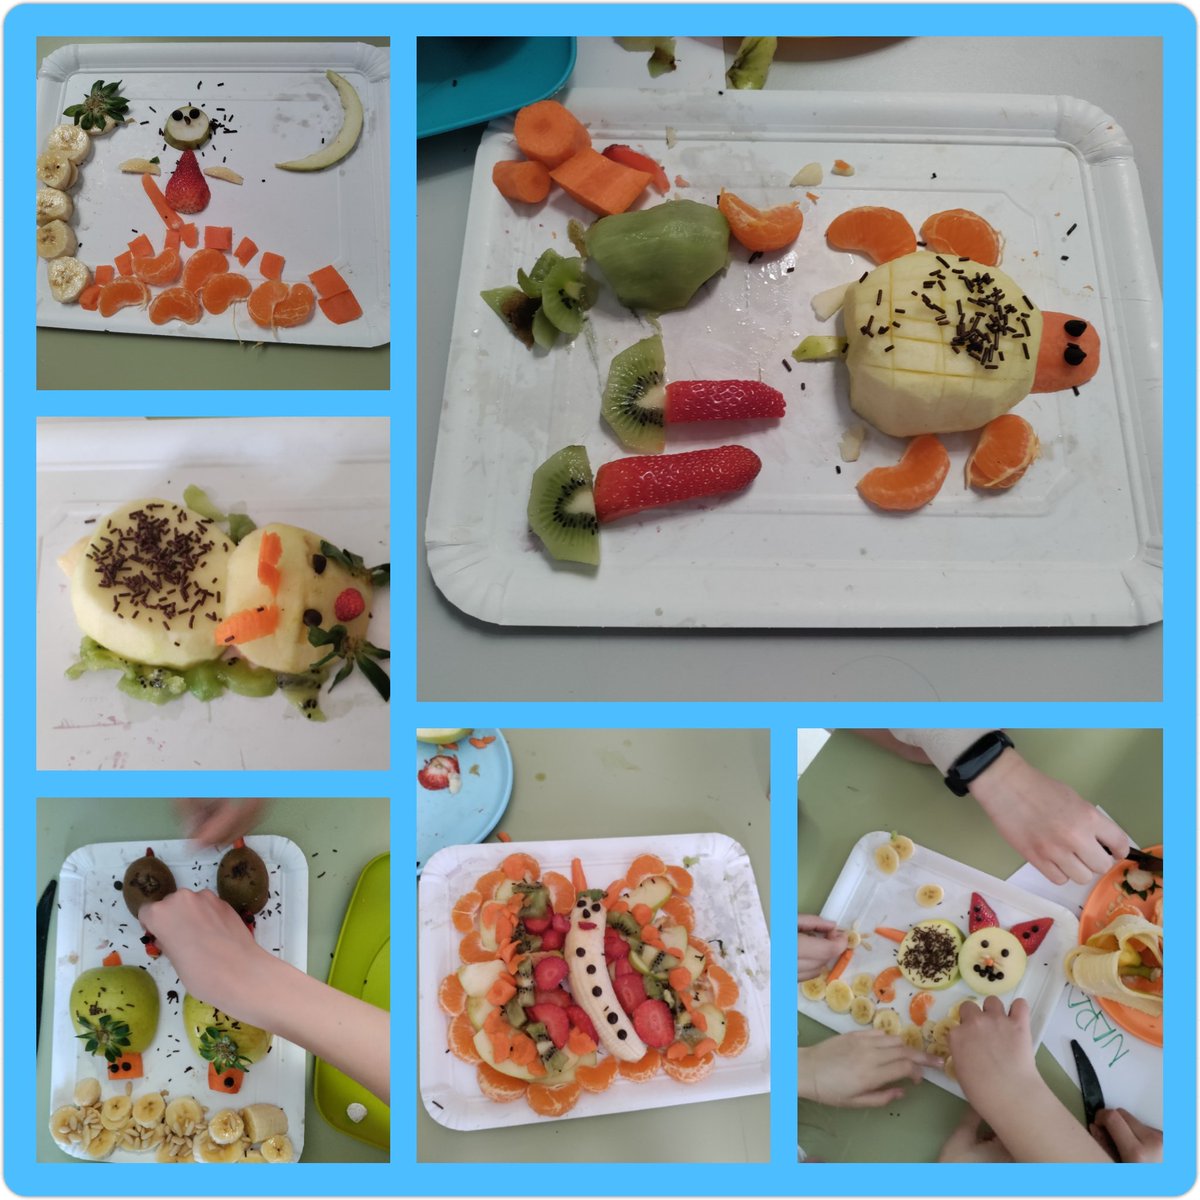 El alumnado de 5° de #PRI participa en el #Taller de #Frutas y #Verduras con 'Óliver Dura' y 'Cristina Ranja' 😜 🍎Tipos de Frutas y Verduras 🍌Creaciones artísticas 🥝Catas de frutas 🍎Zumo de frutas @urcacyl #DietaSaludable @5aldiaspain @educacyl #SoyDelRaimundo